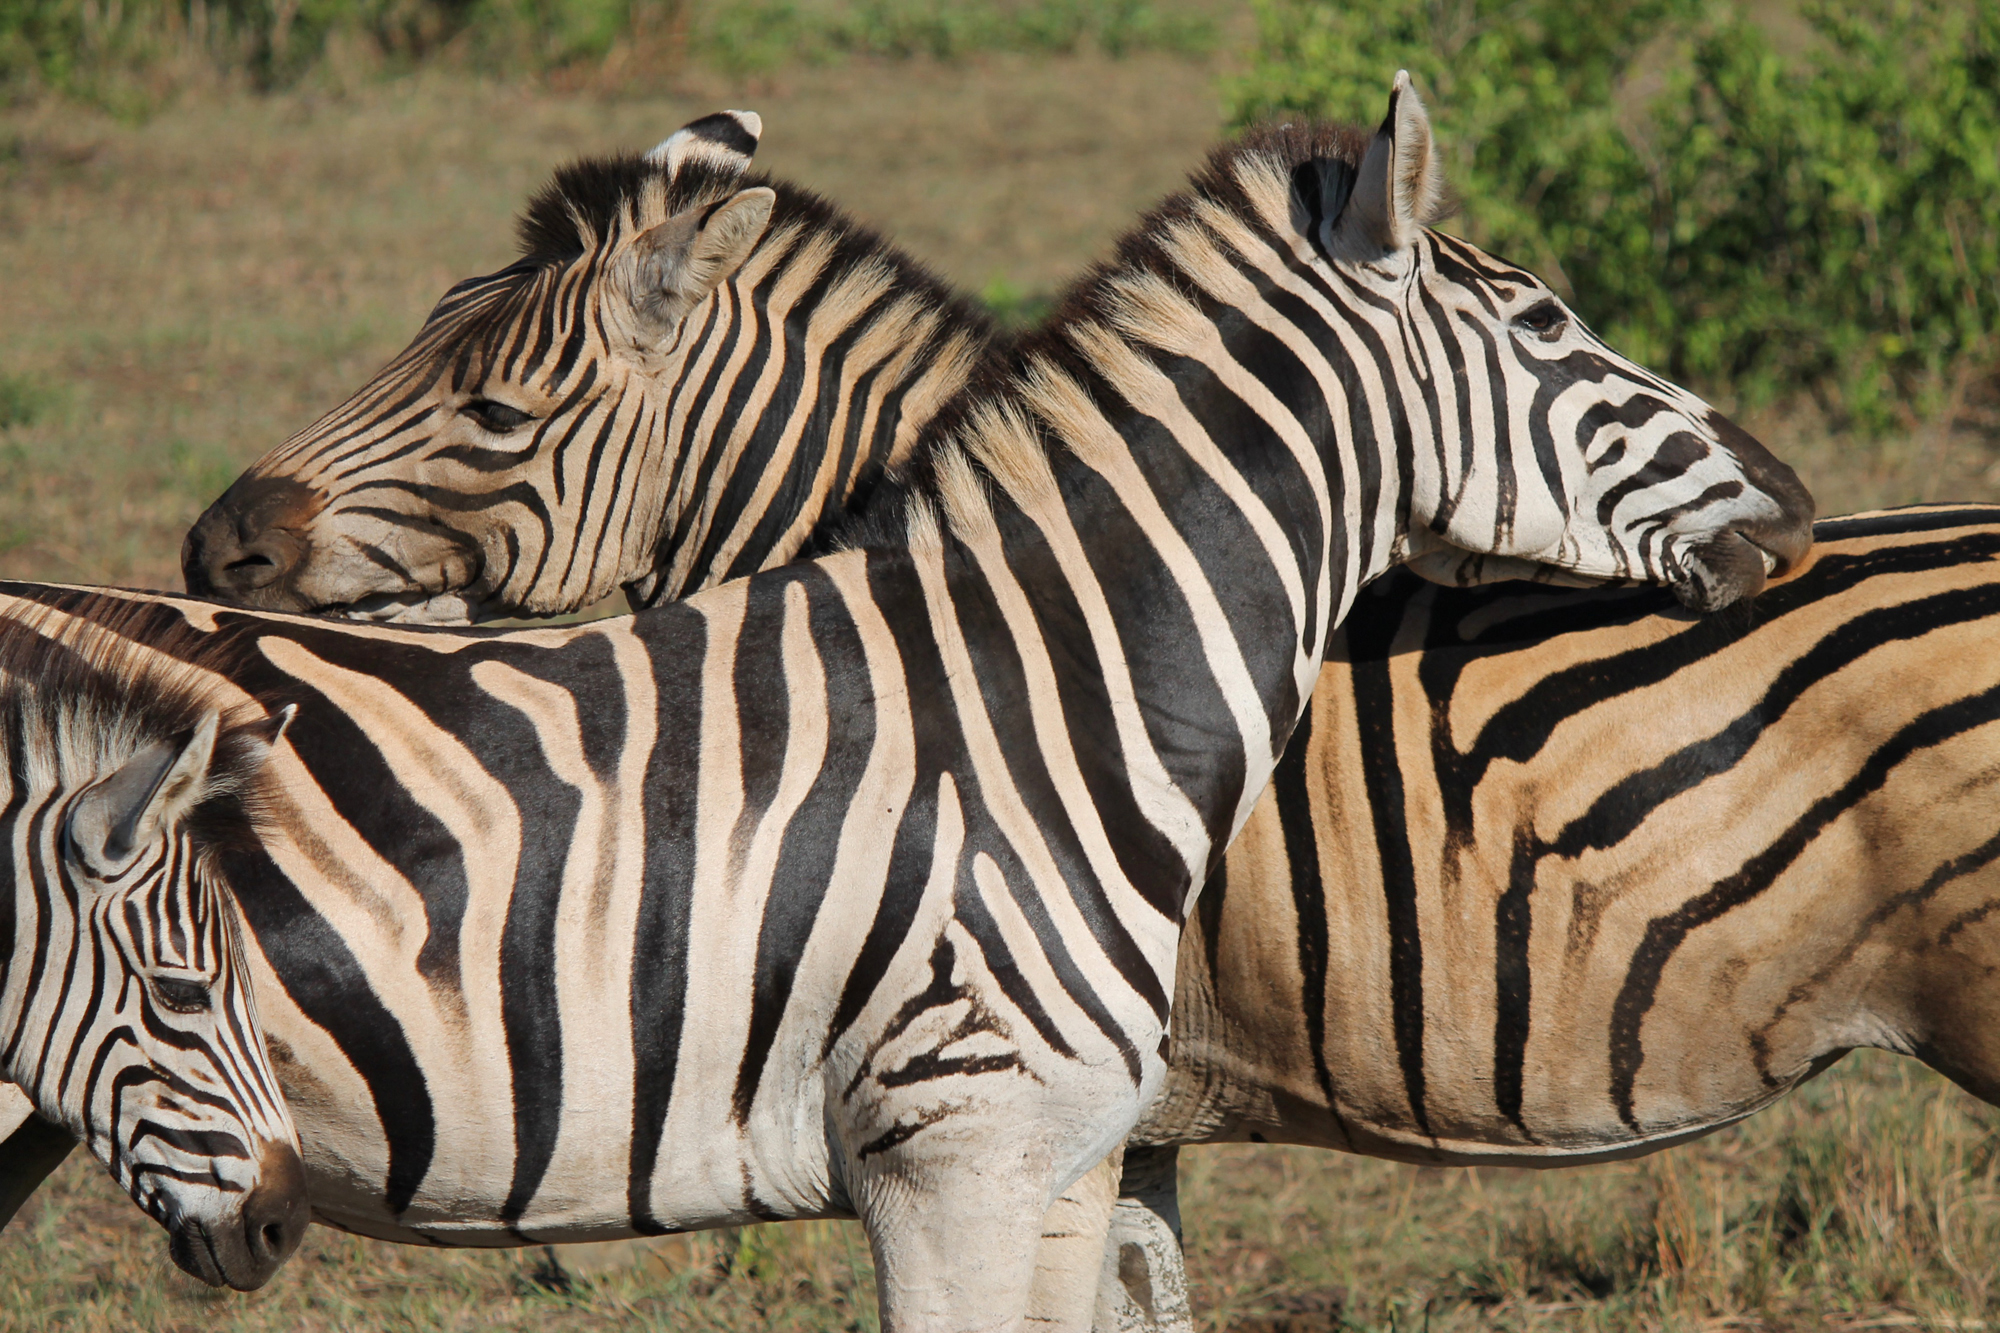  Each zebra has unique markings 